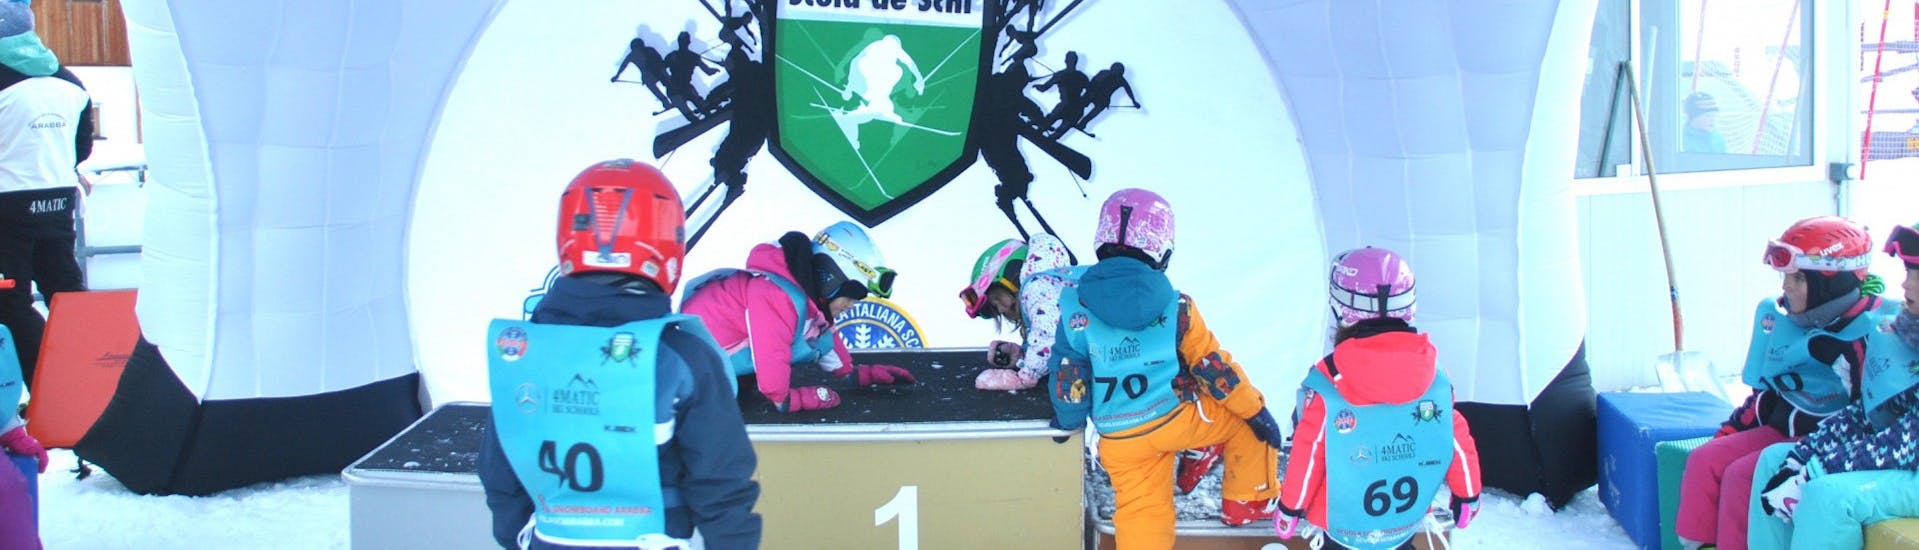 Piccoli sciatori si divertono nel kinderland durante le Lezioni di sci per bambini (dai 4 anni) per tutti i livelli con Scuola Italiana Sci Arabba.